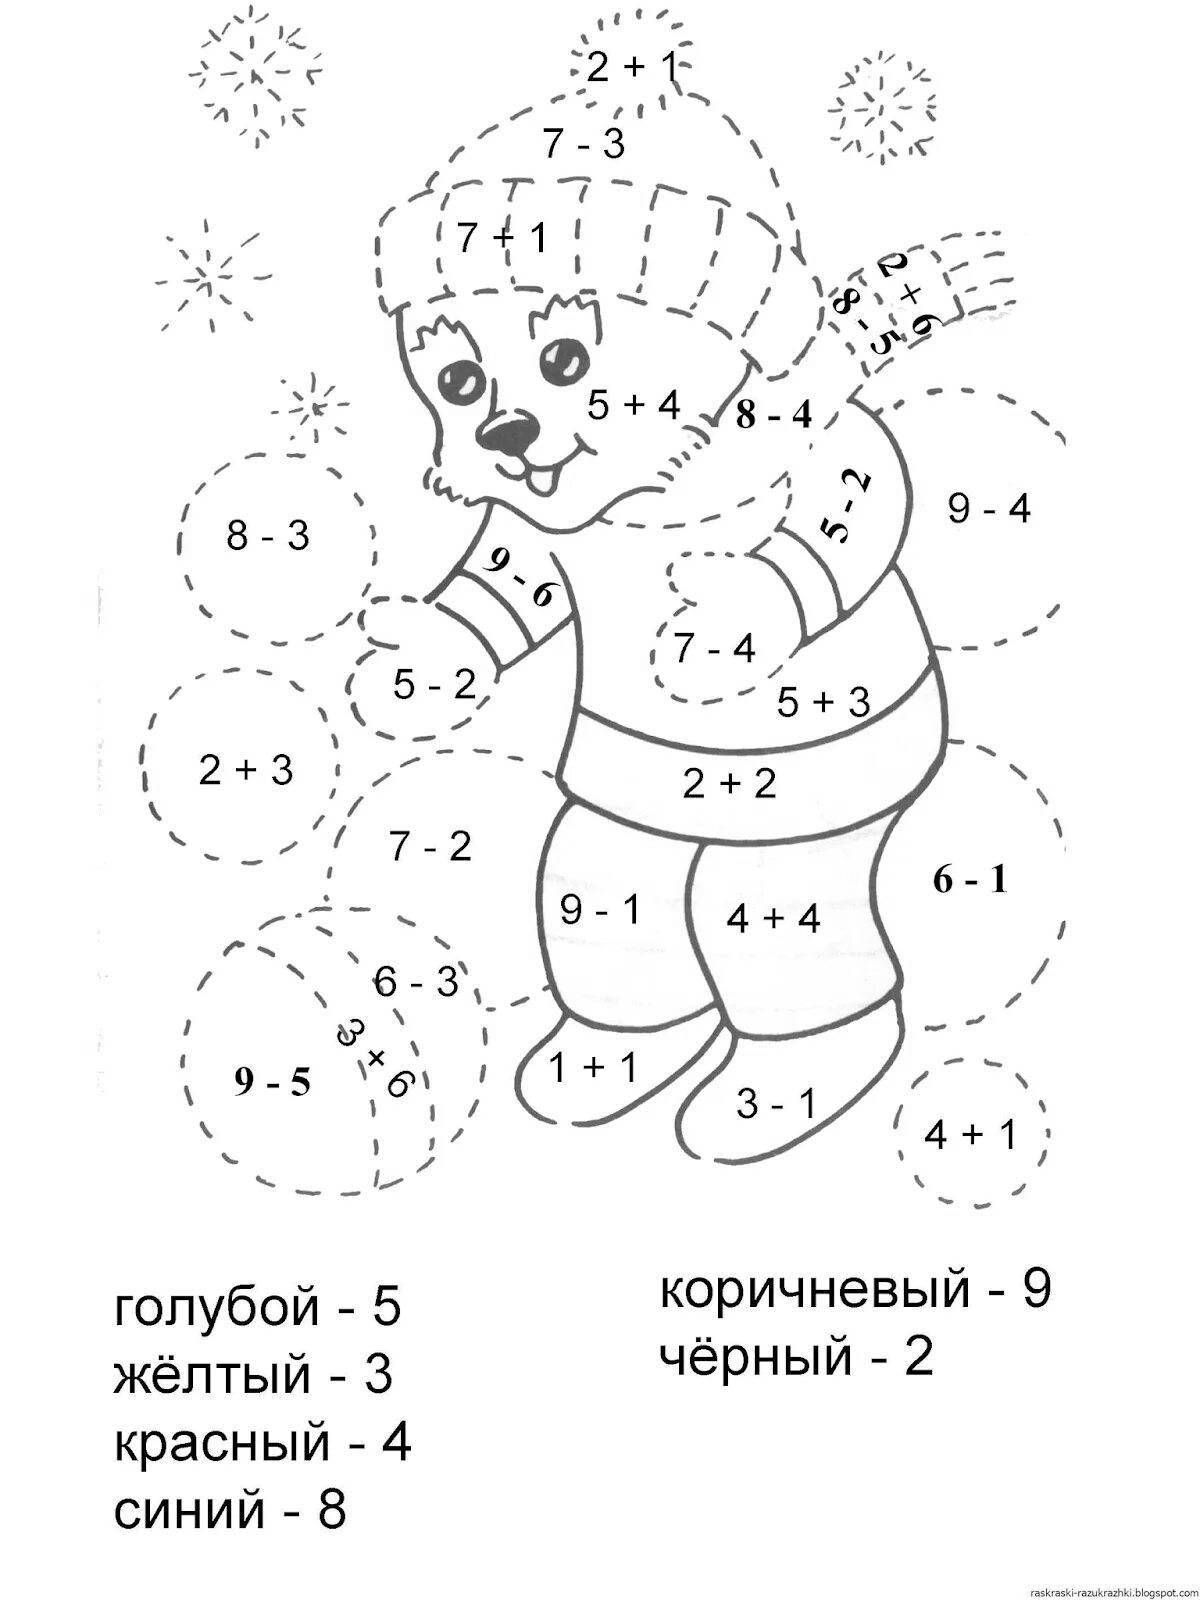 Очаровательная математическая раскраска для детей 5-7 лет